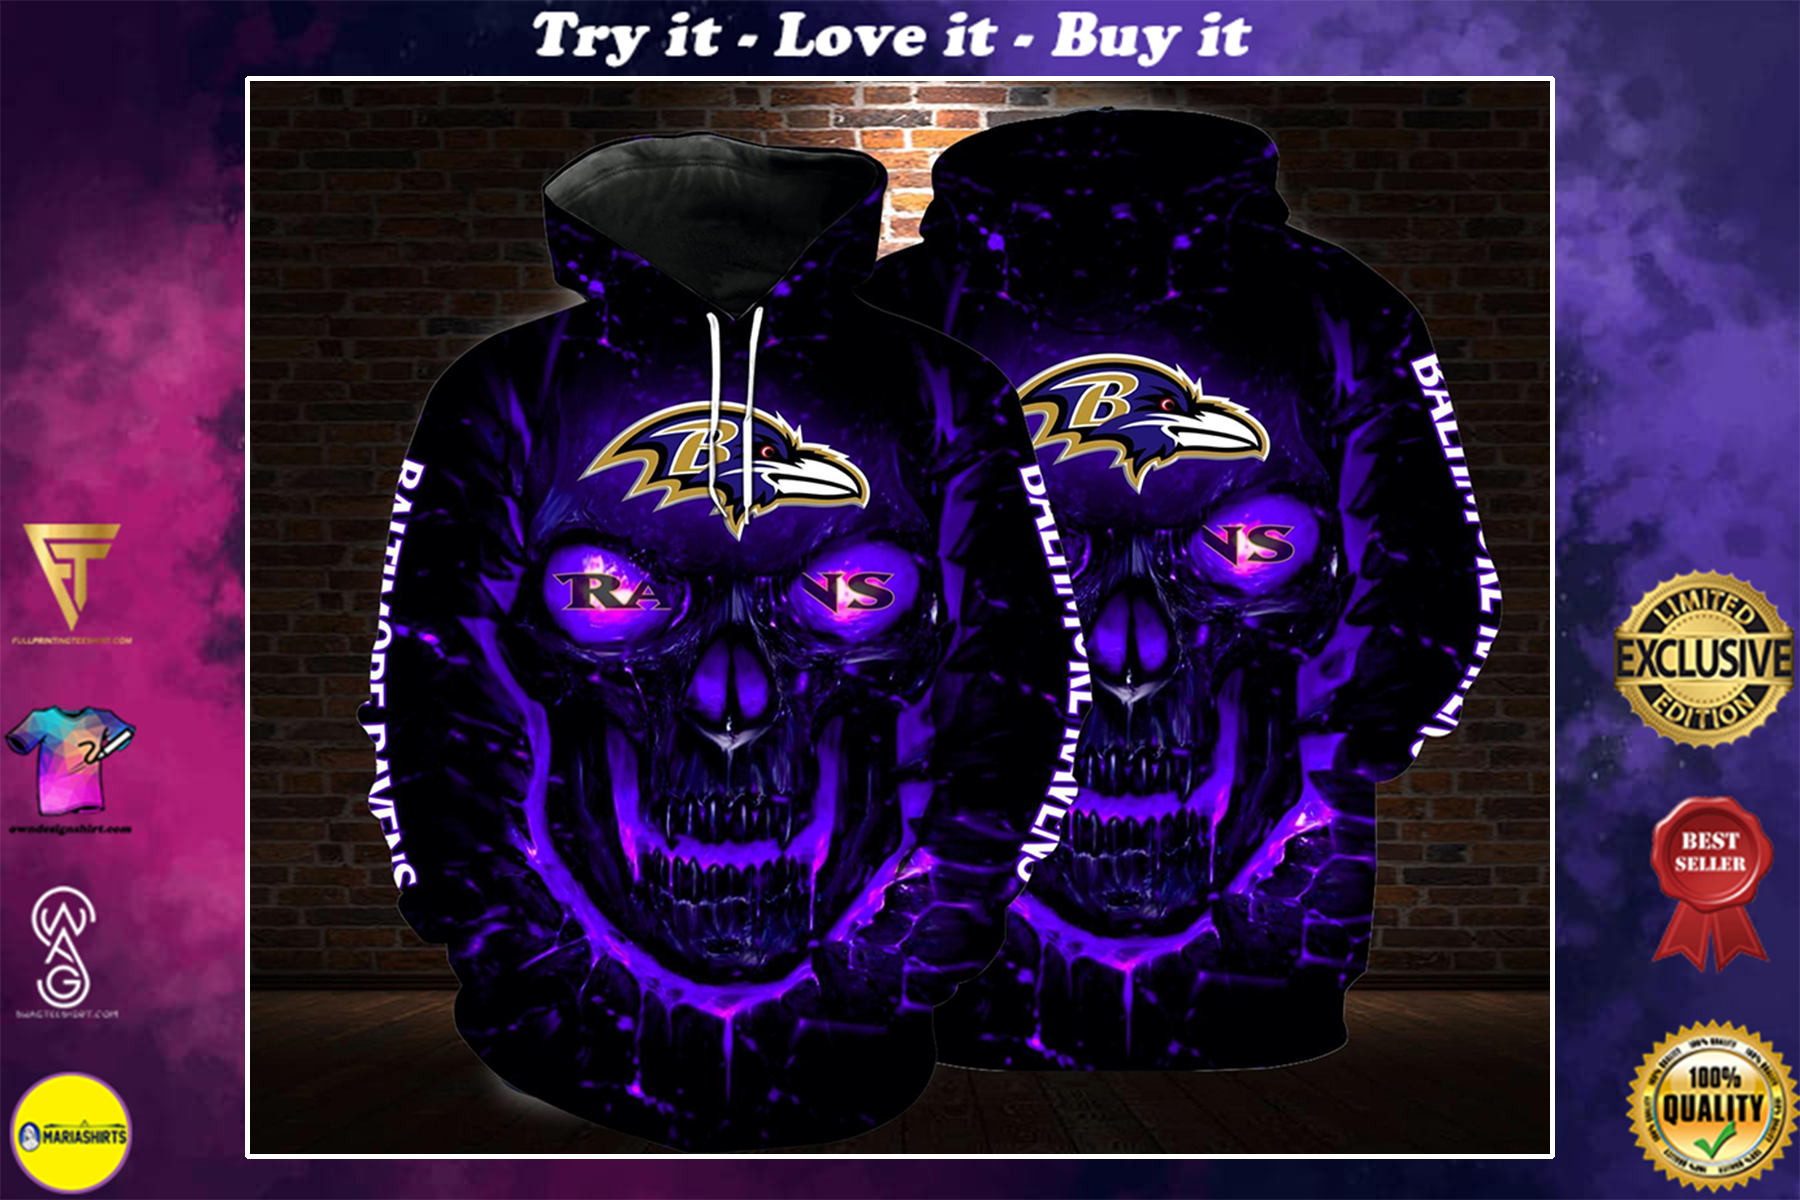 [highest selling] lava skull baltimore ravens football team full over printed shirt - maria